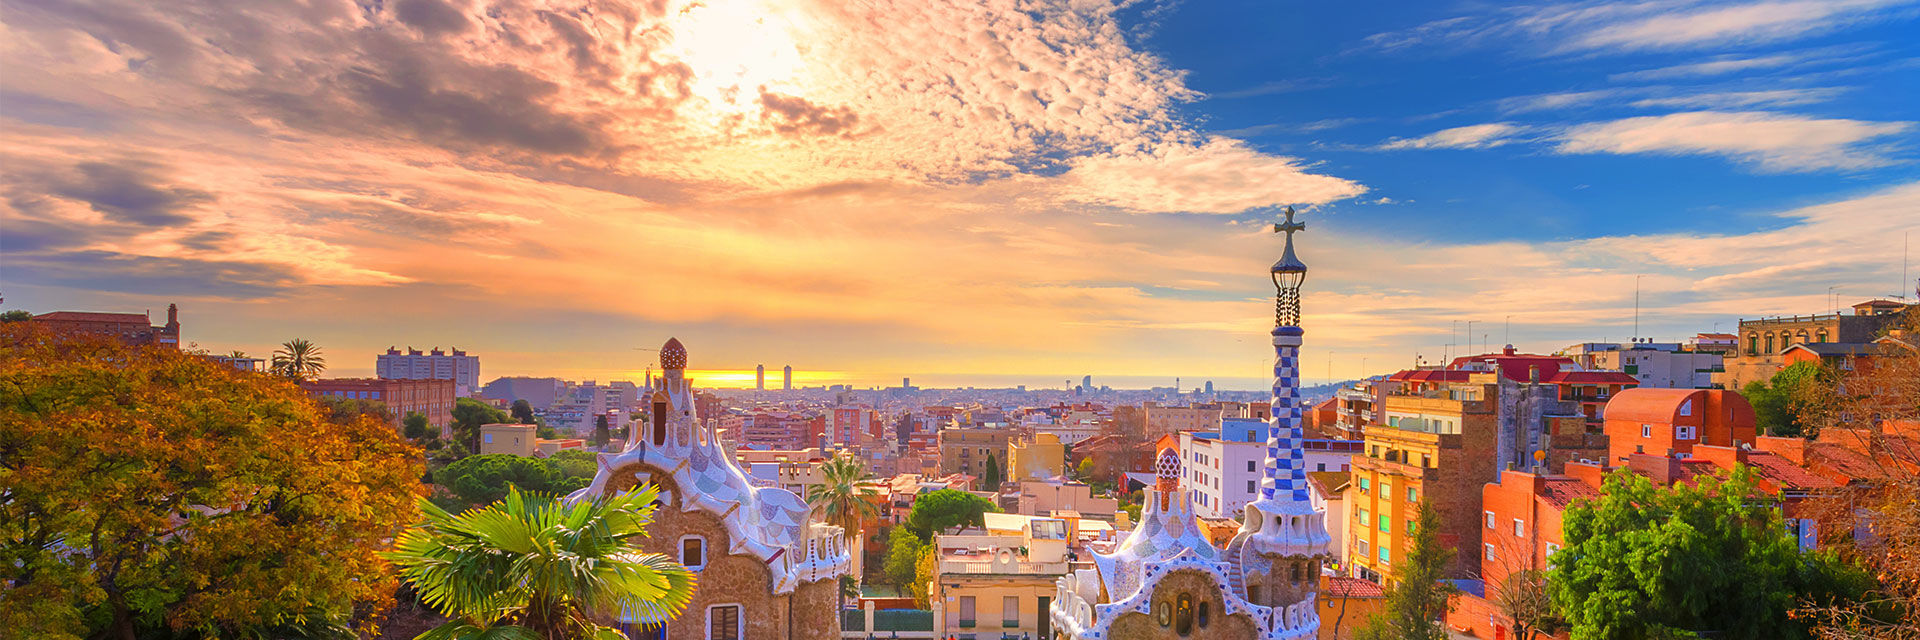 Barcelona - Discover Sagrada Familia##Discover La Pedrera##Discover Las Ramblas